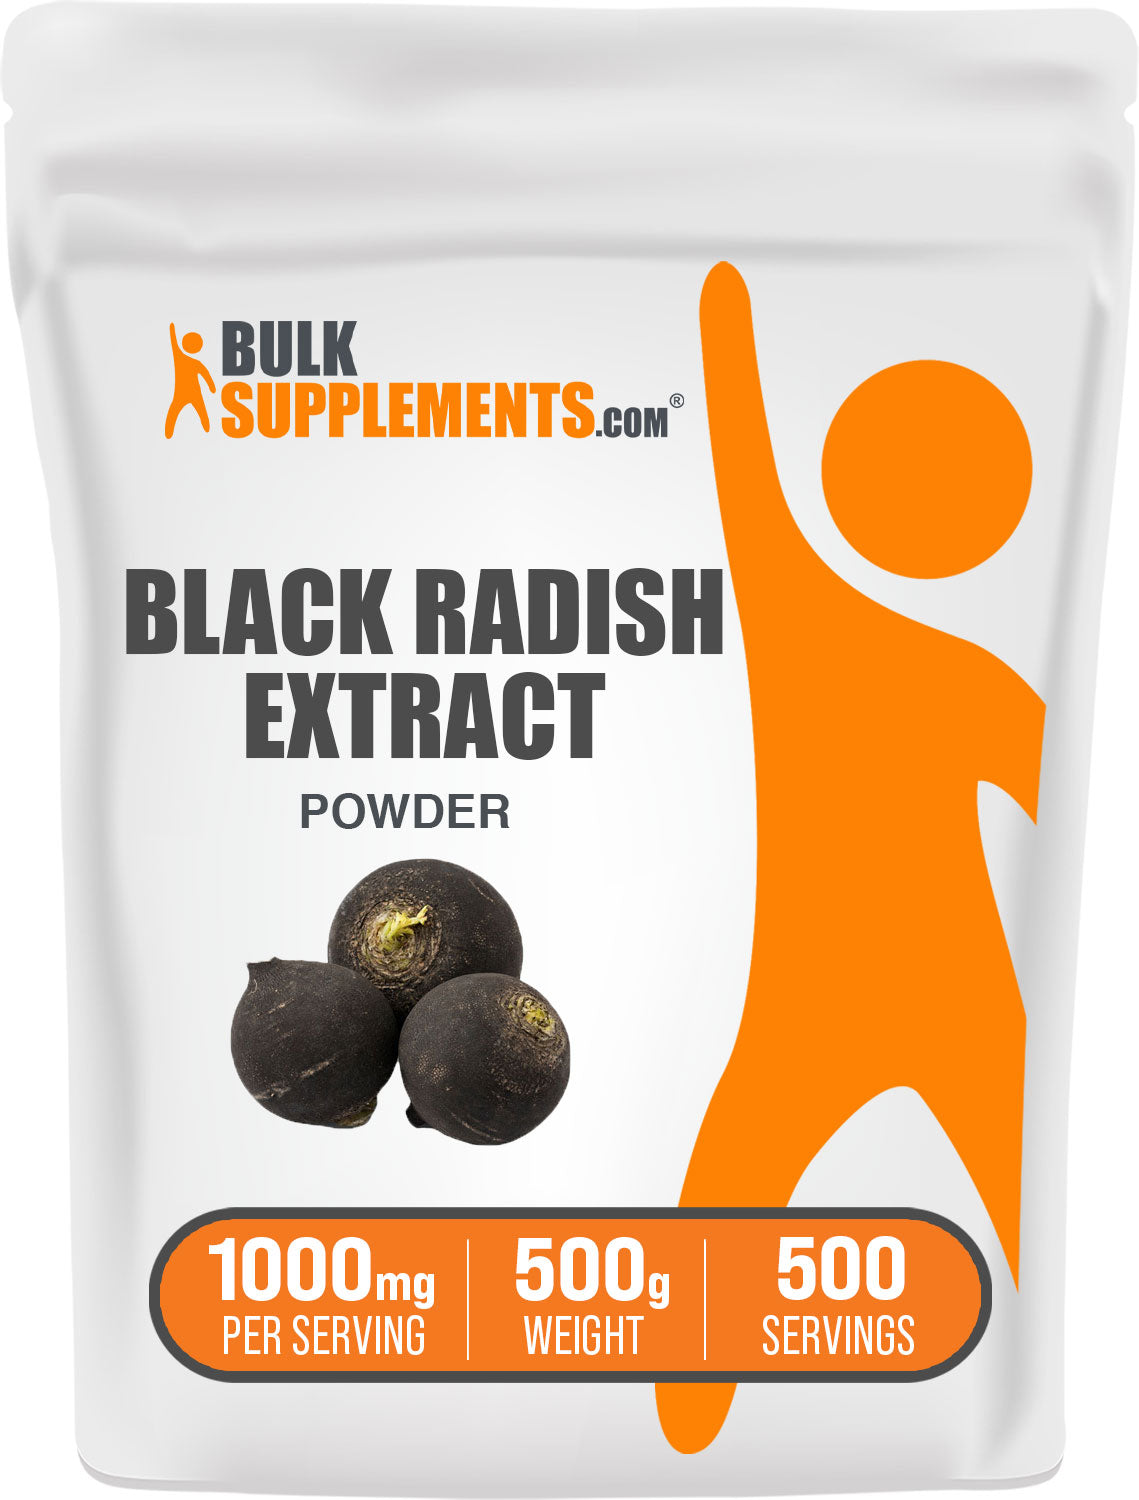 500g of black radish powder